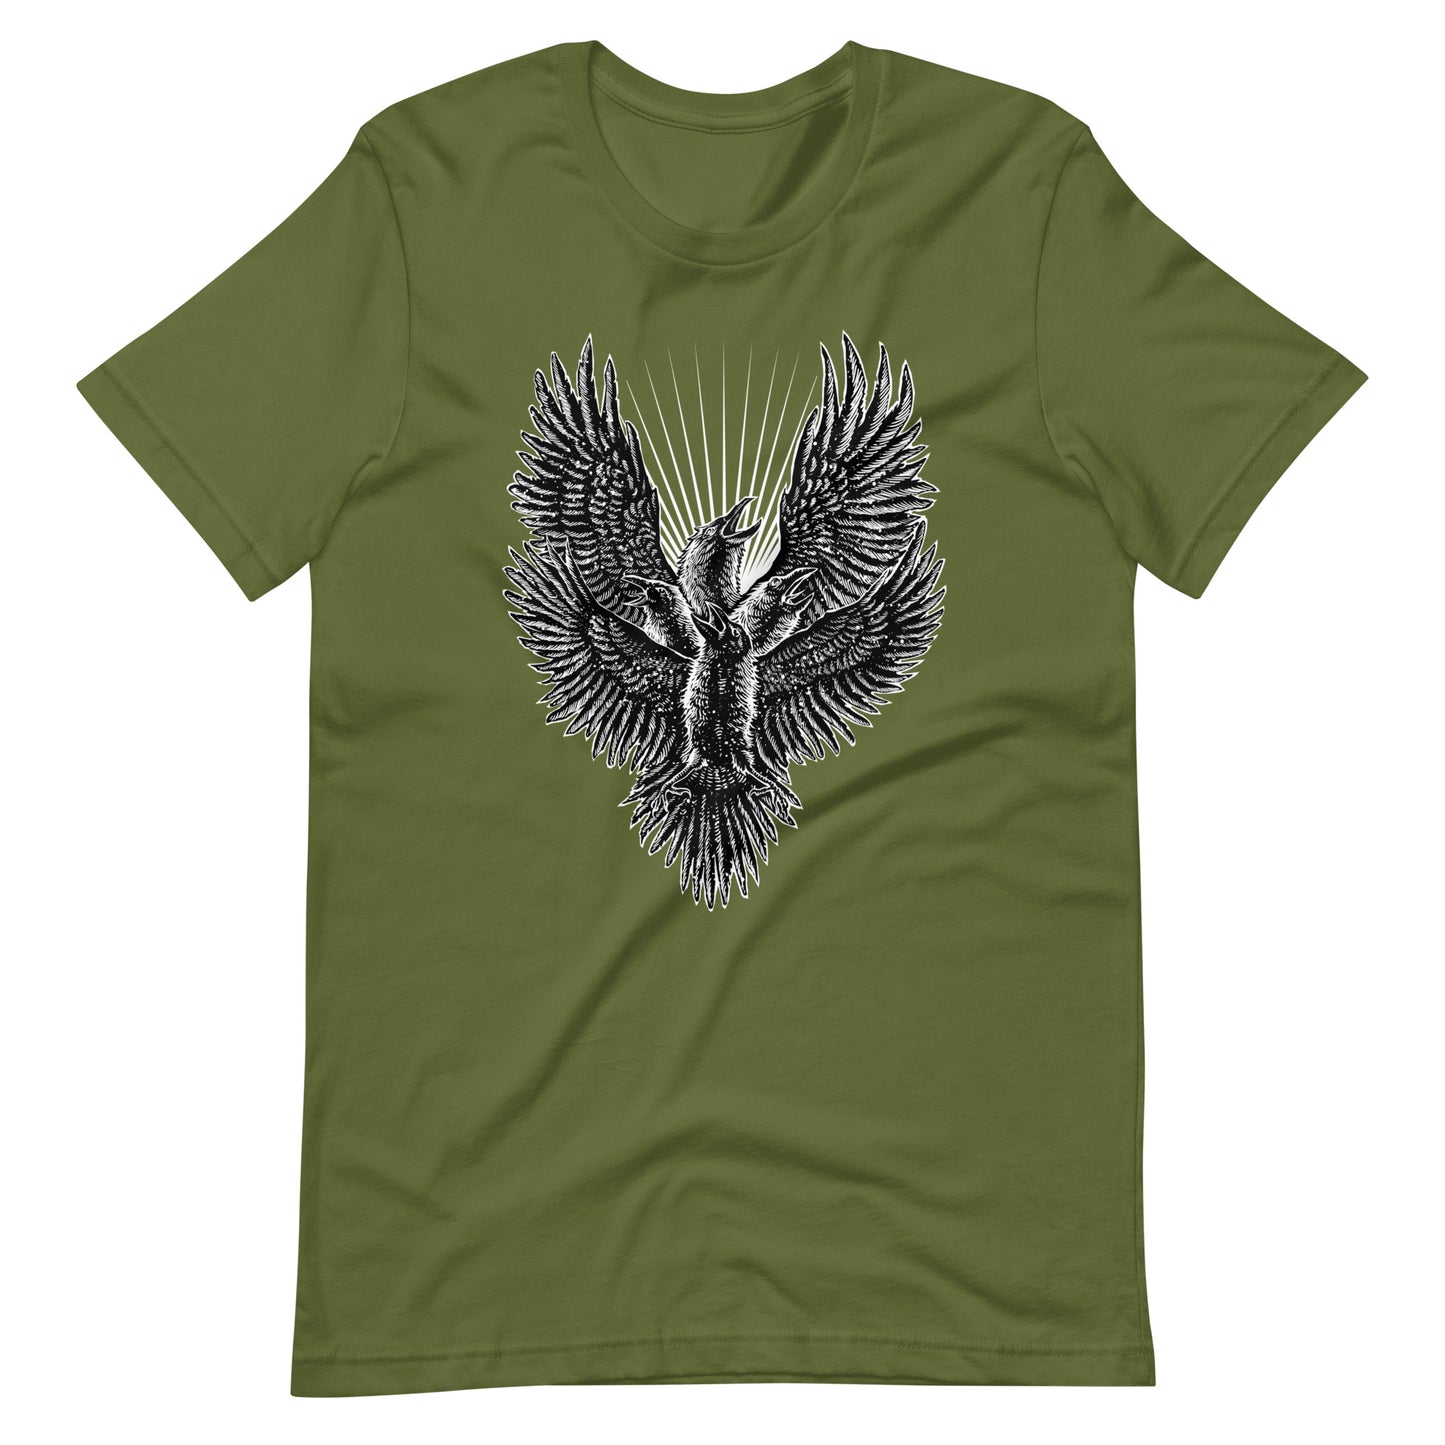 Luminous Crow - Men's t-shirt - Olive Front